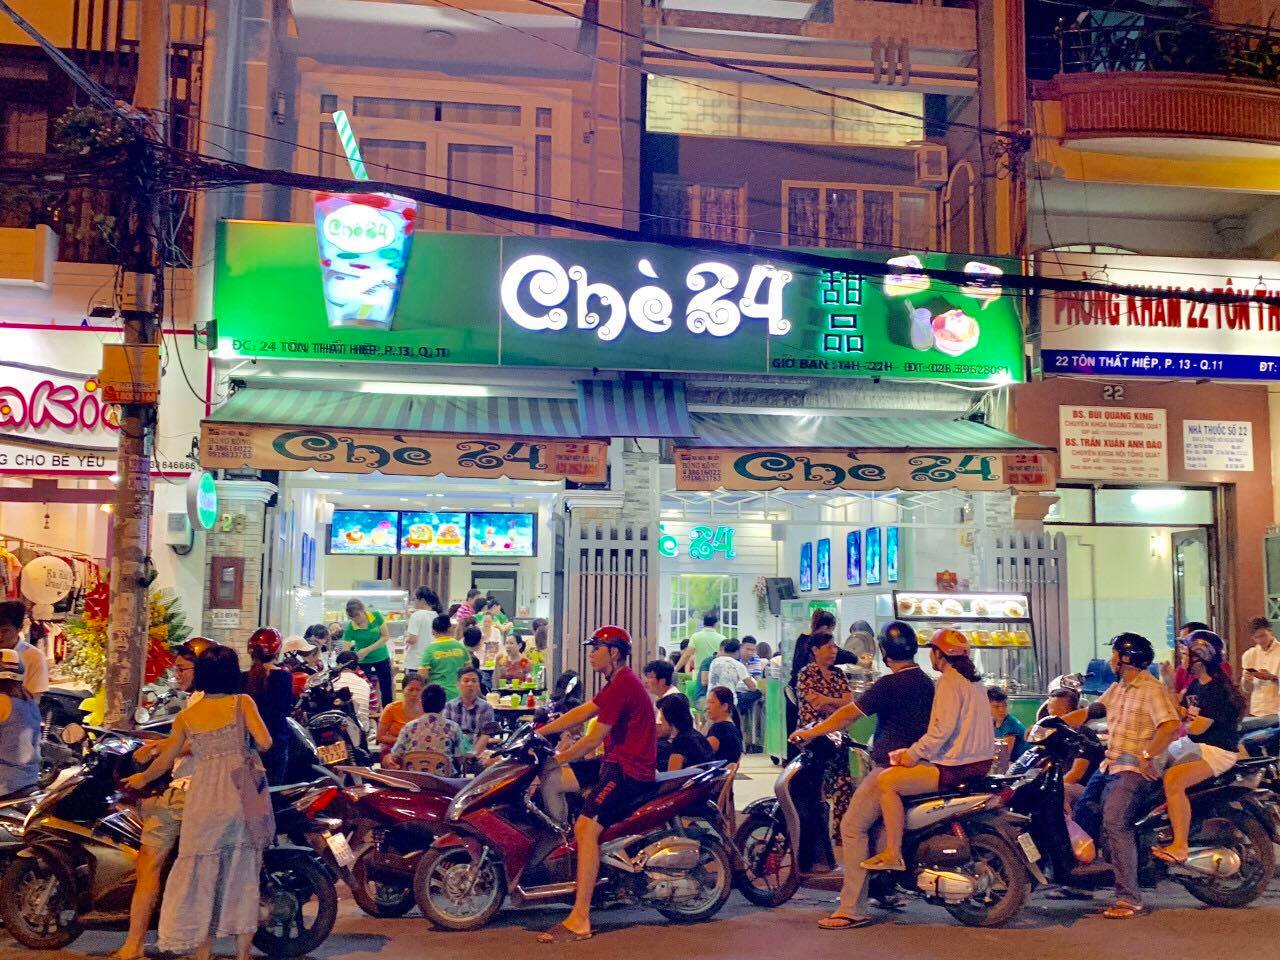 Top 13 quán chè ngon nổi tiếng gần đây TP.Hồ Chí Minh nhất